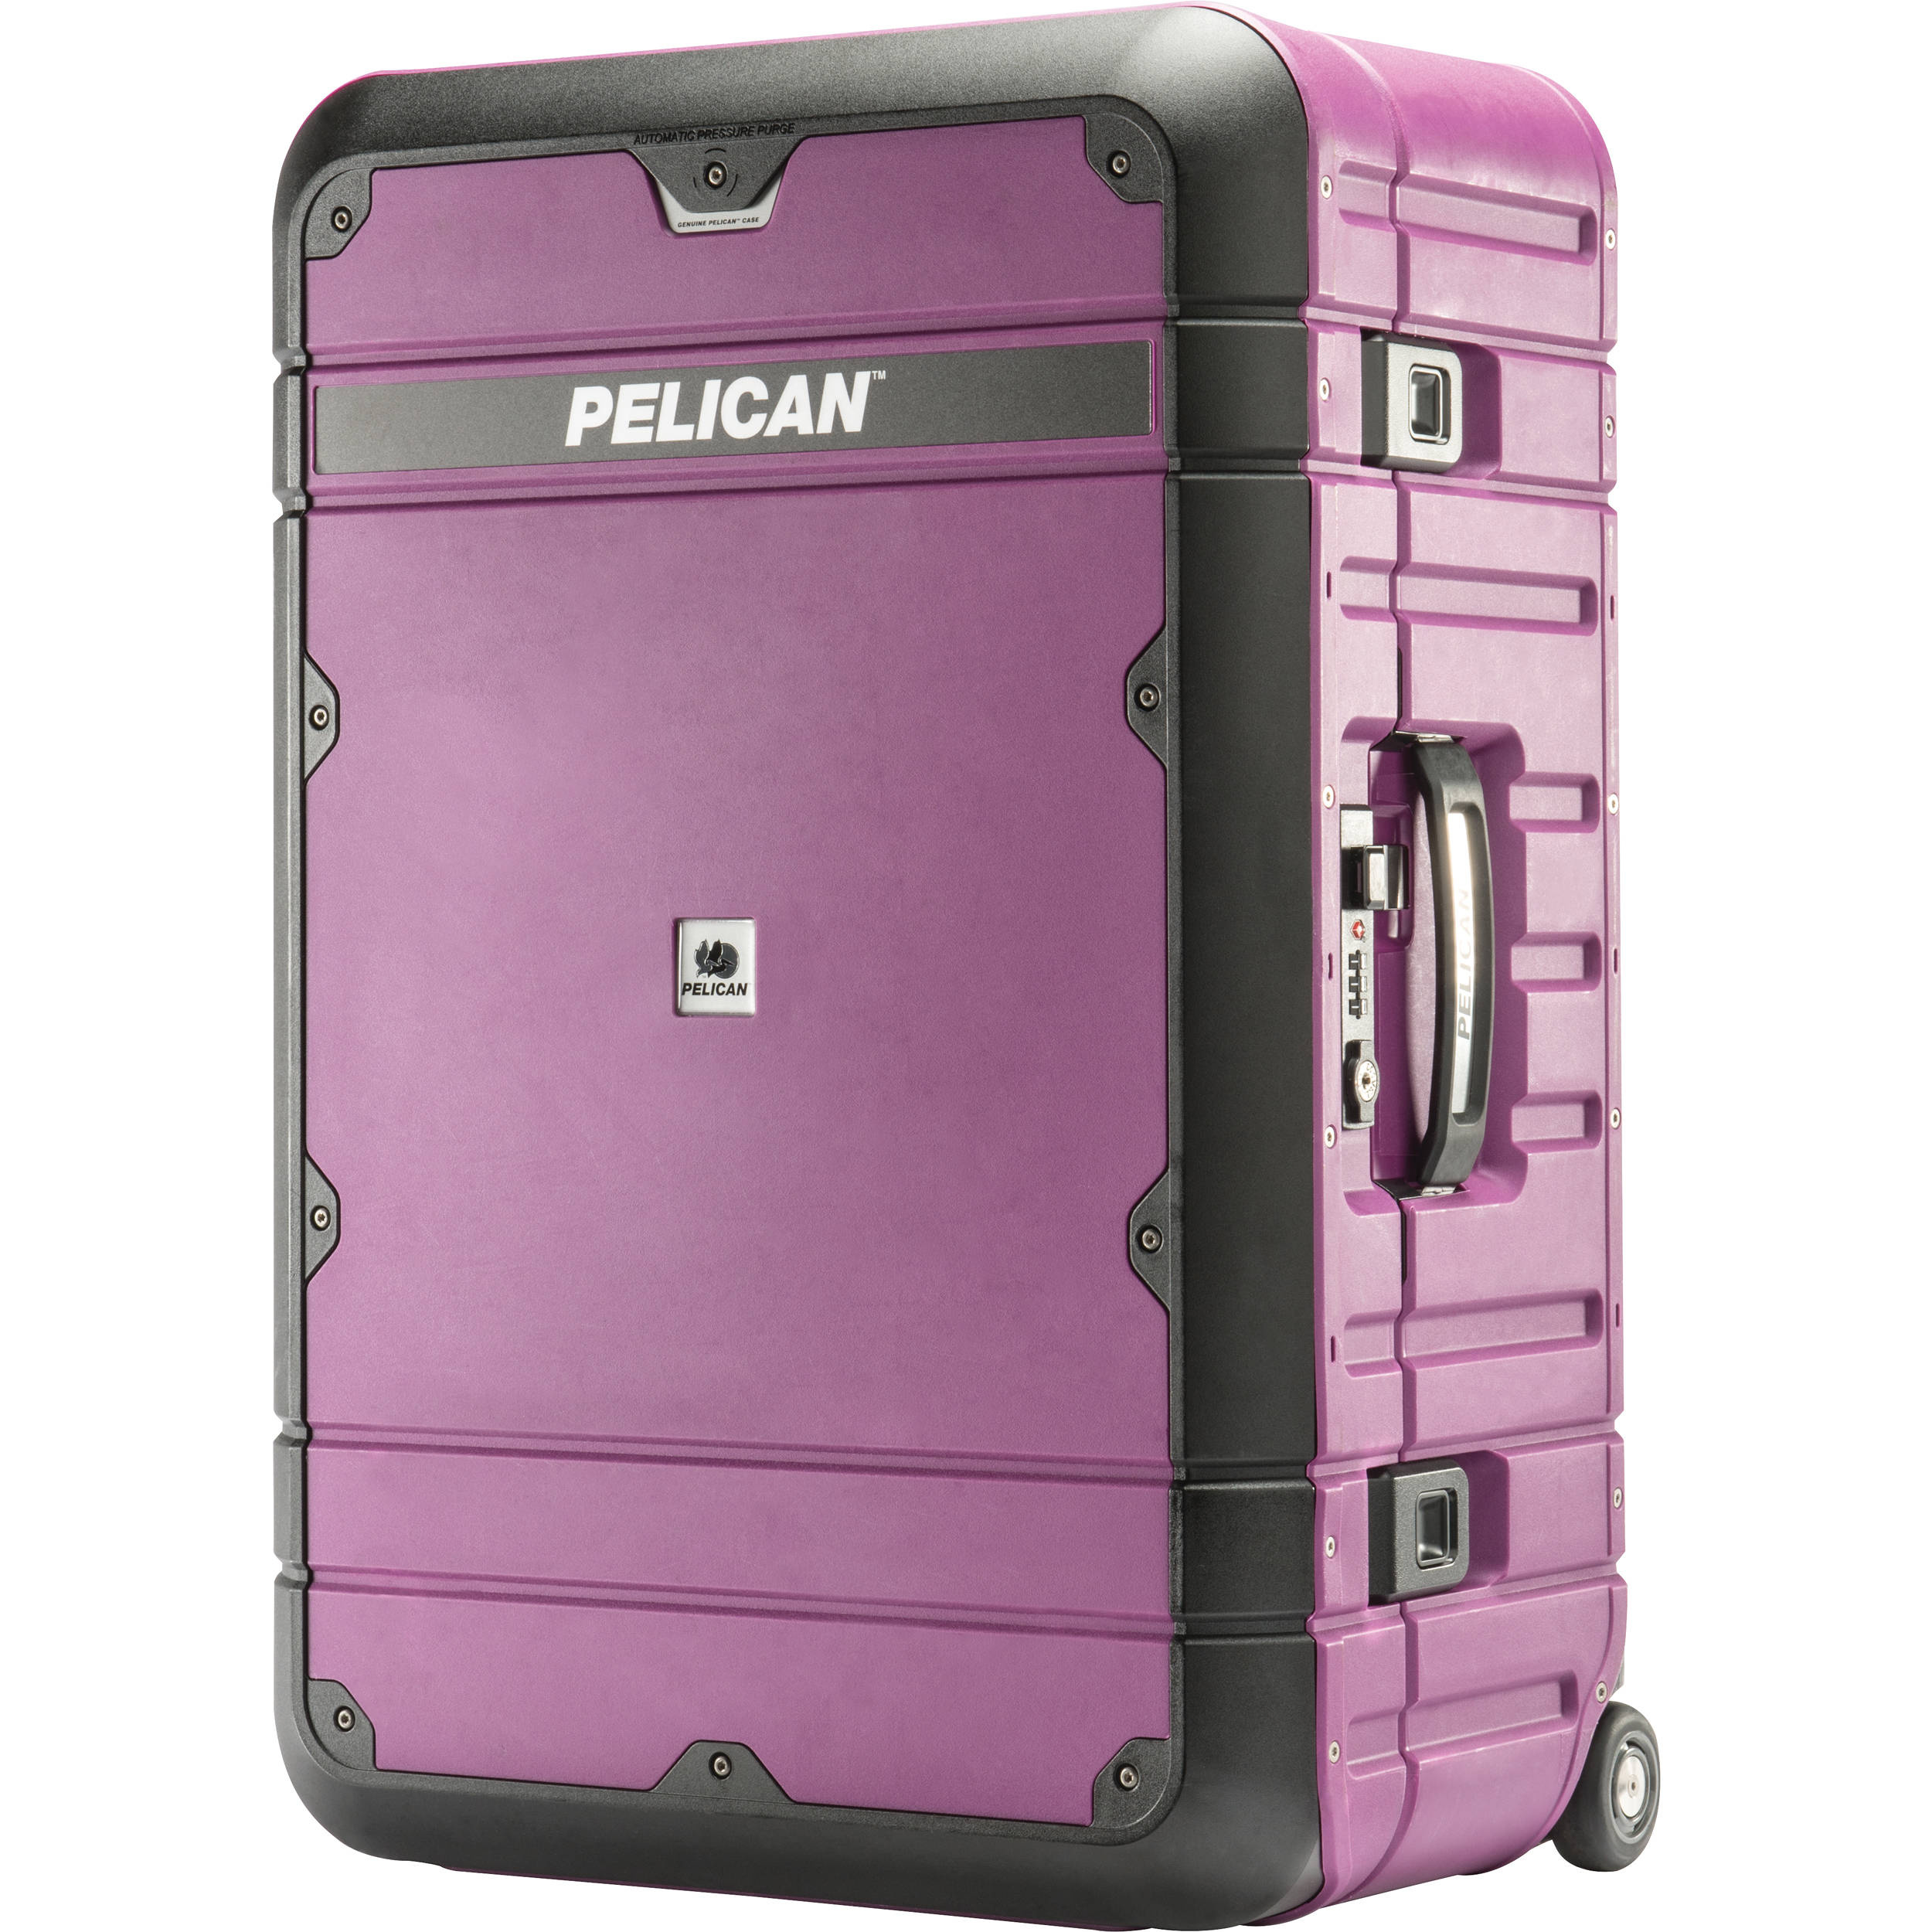 Pelican BA27 Elite Weekender Luggage (Plum and Black)